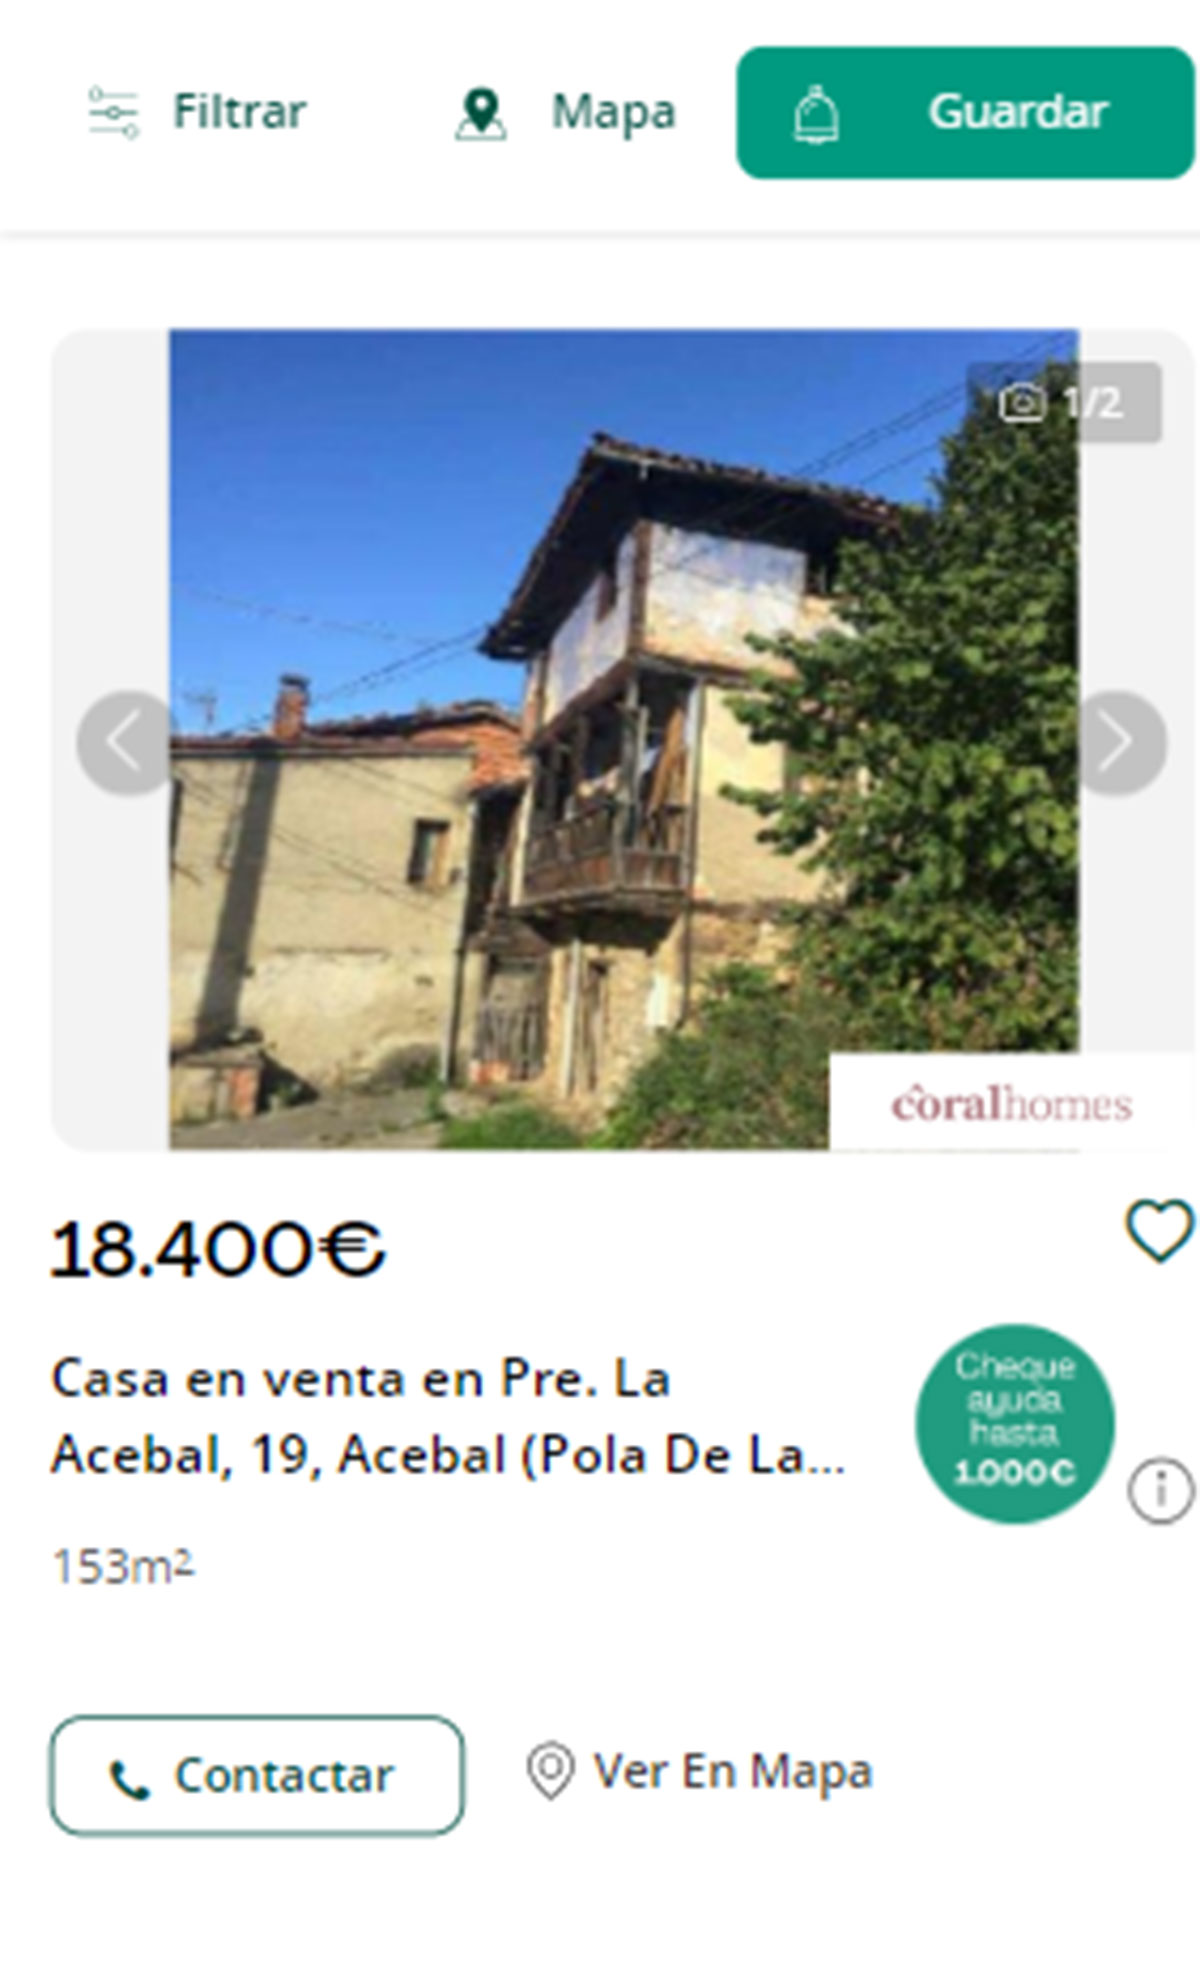 Piso en Asturias por 18.000 euros